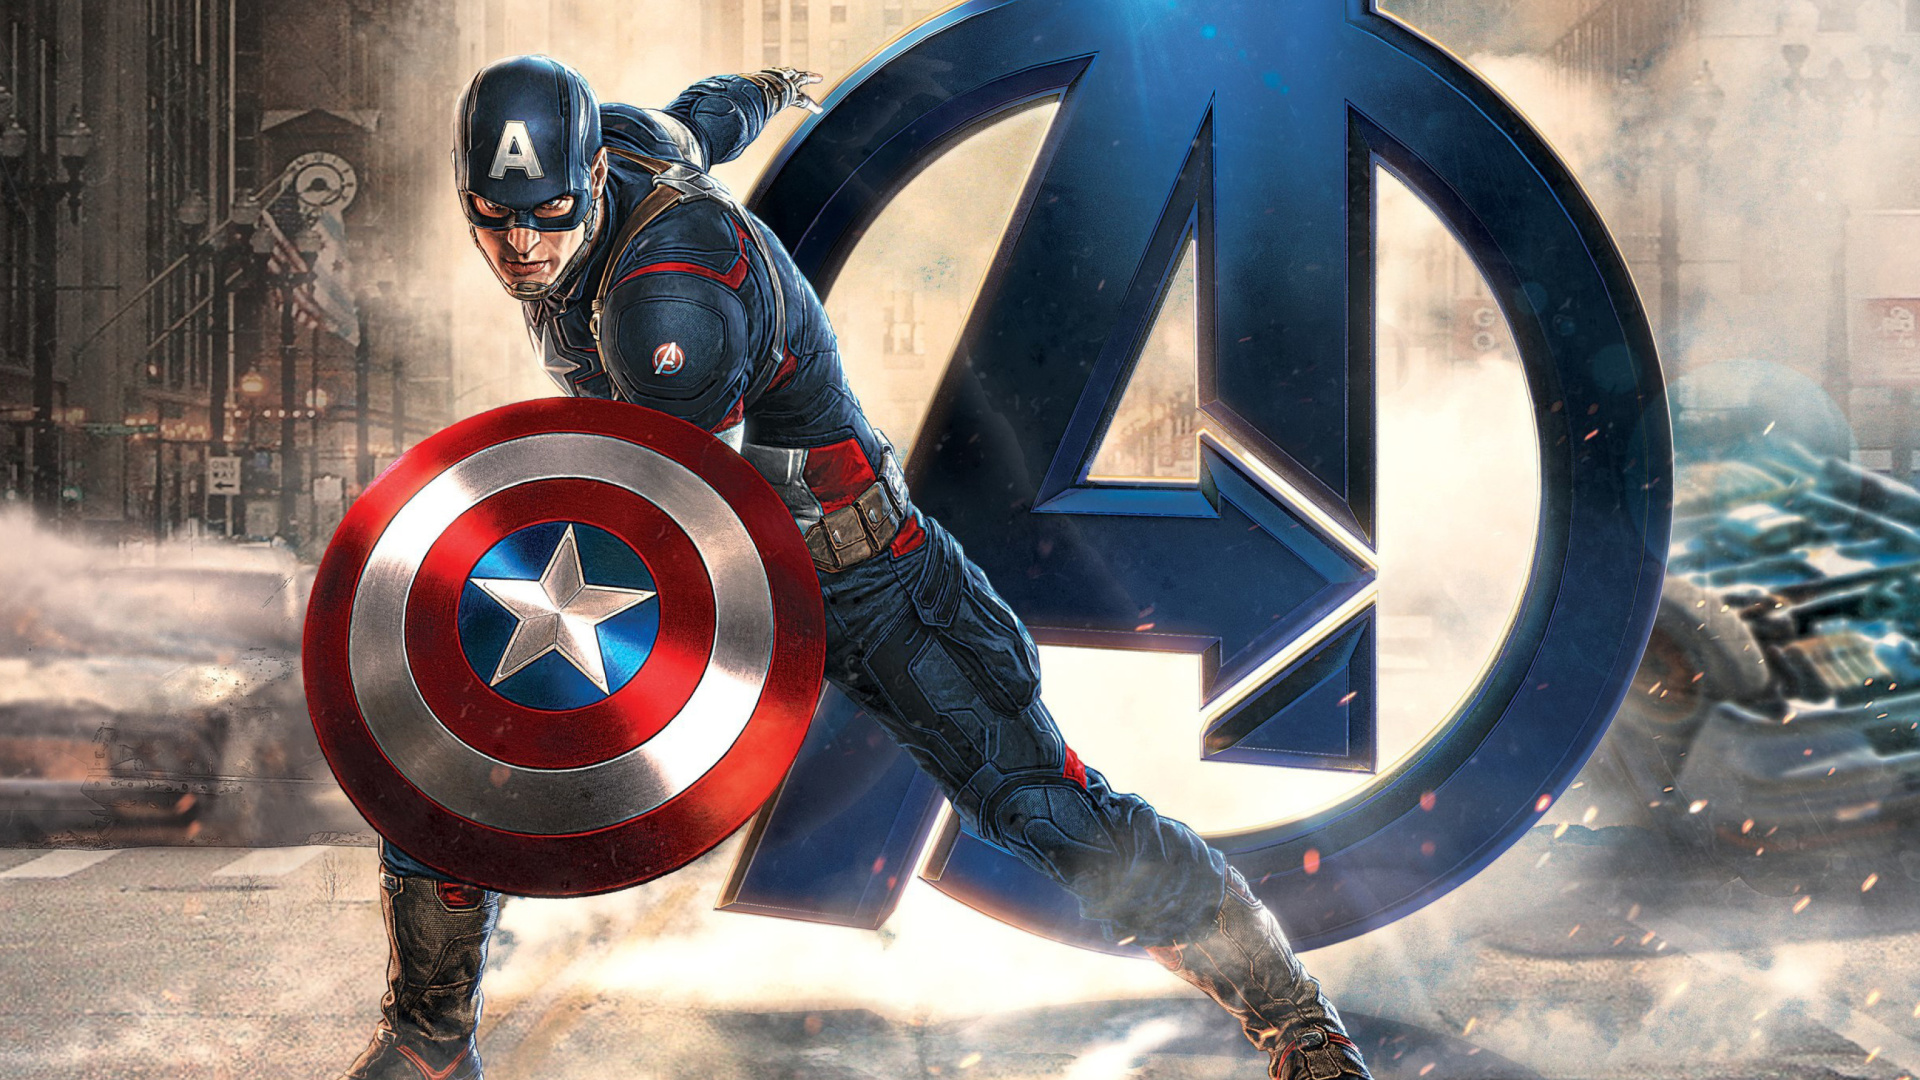 Captain America Marvel Avengers wallpaper 1920x1080